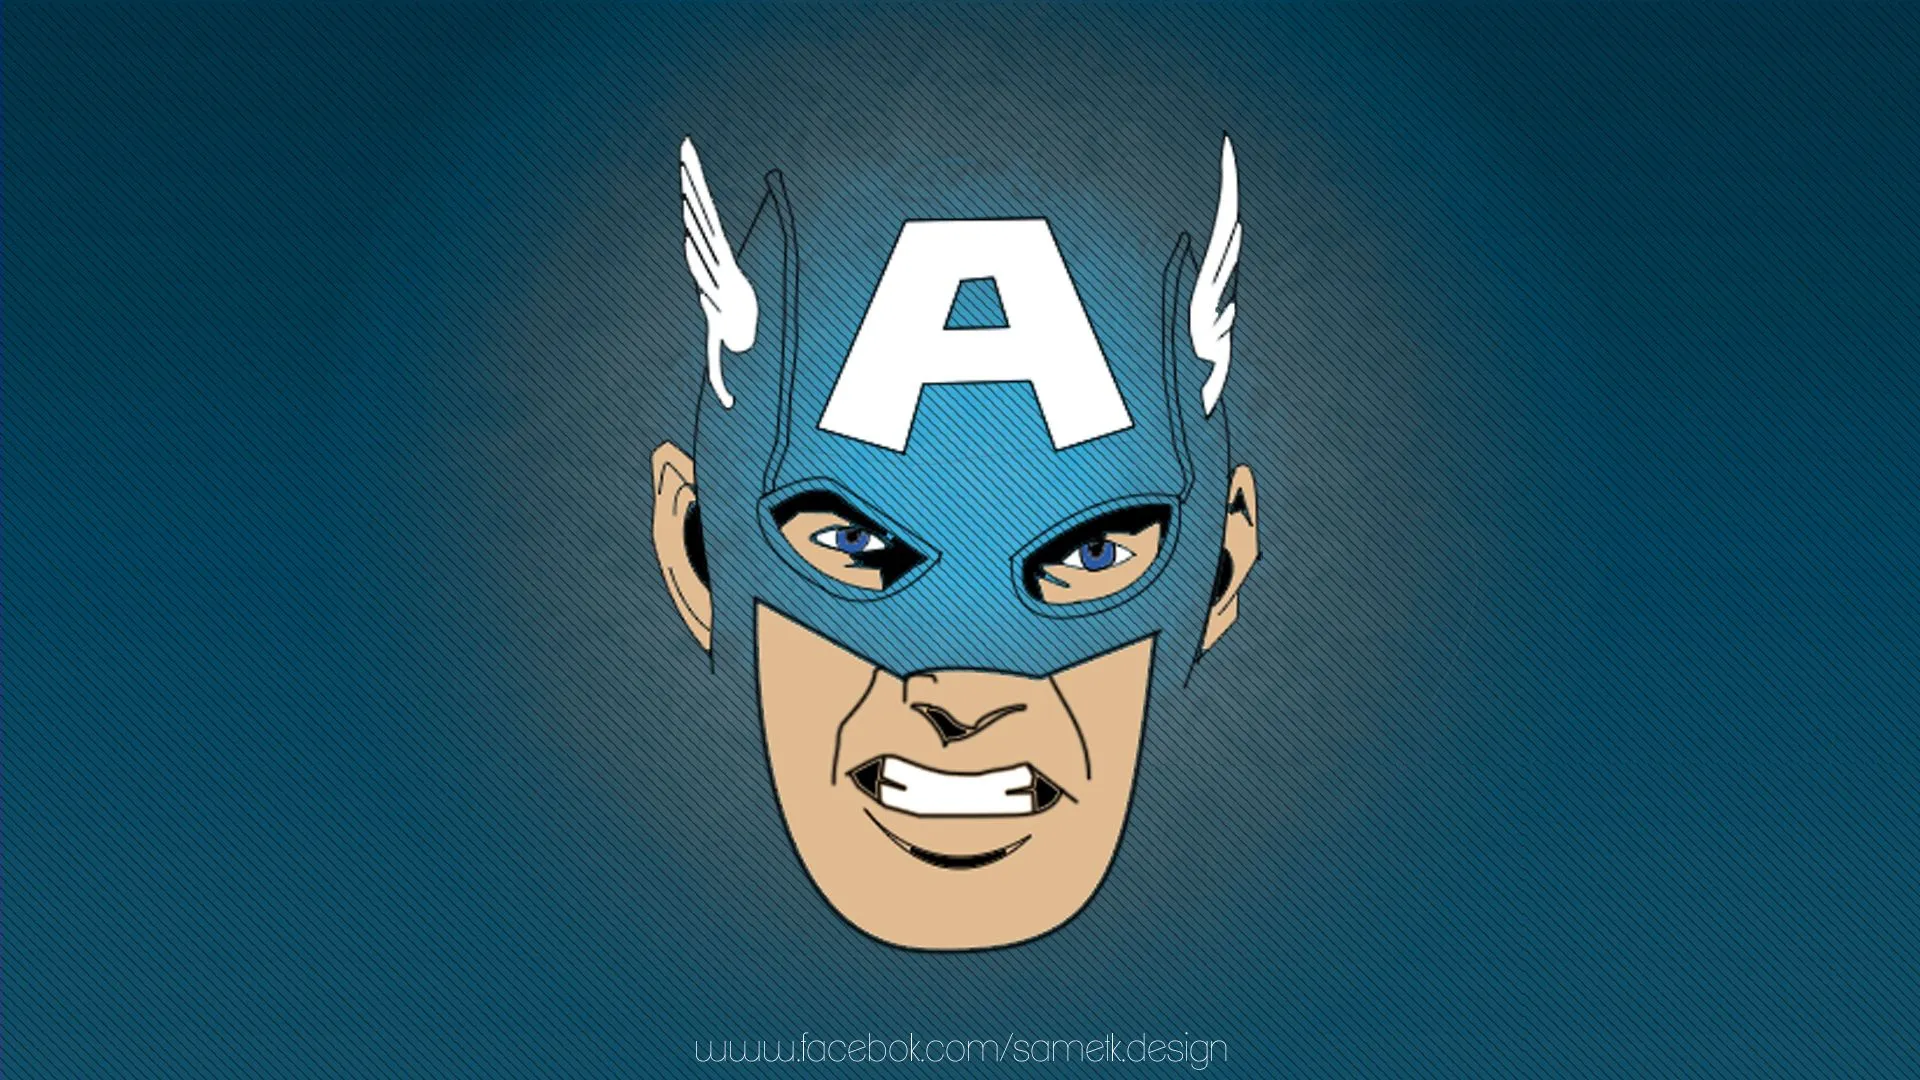 Captain America Wallpaper Cartoon by sametklyc on DeviantArt